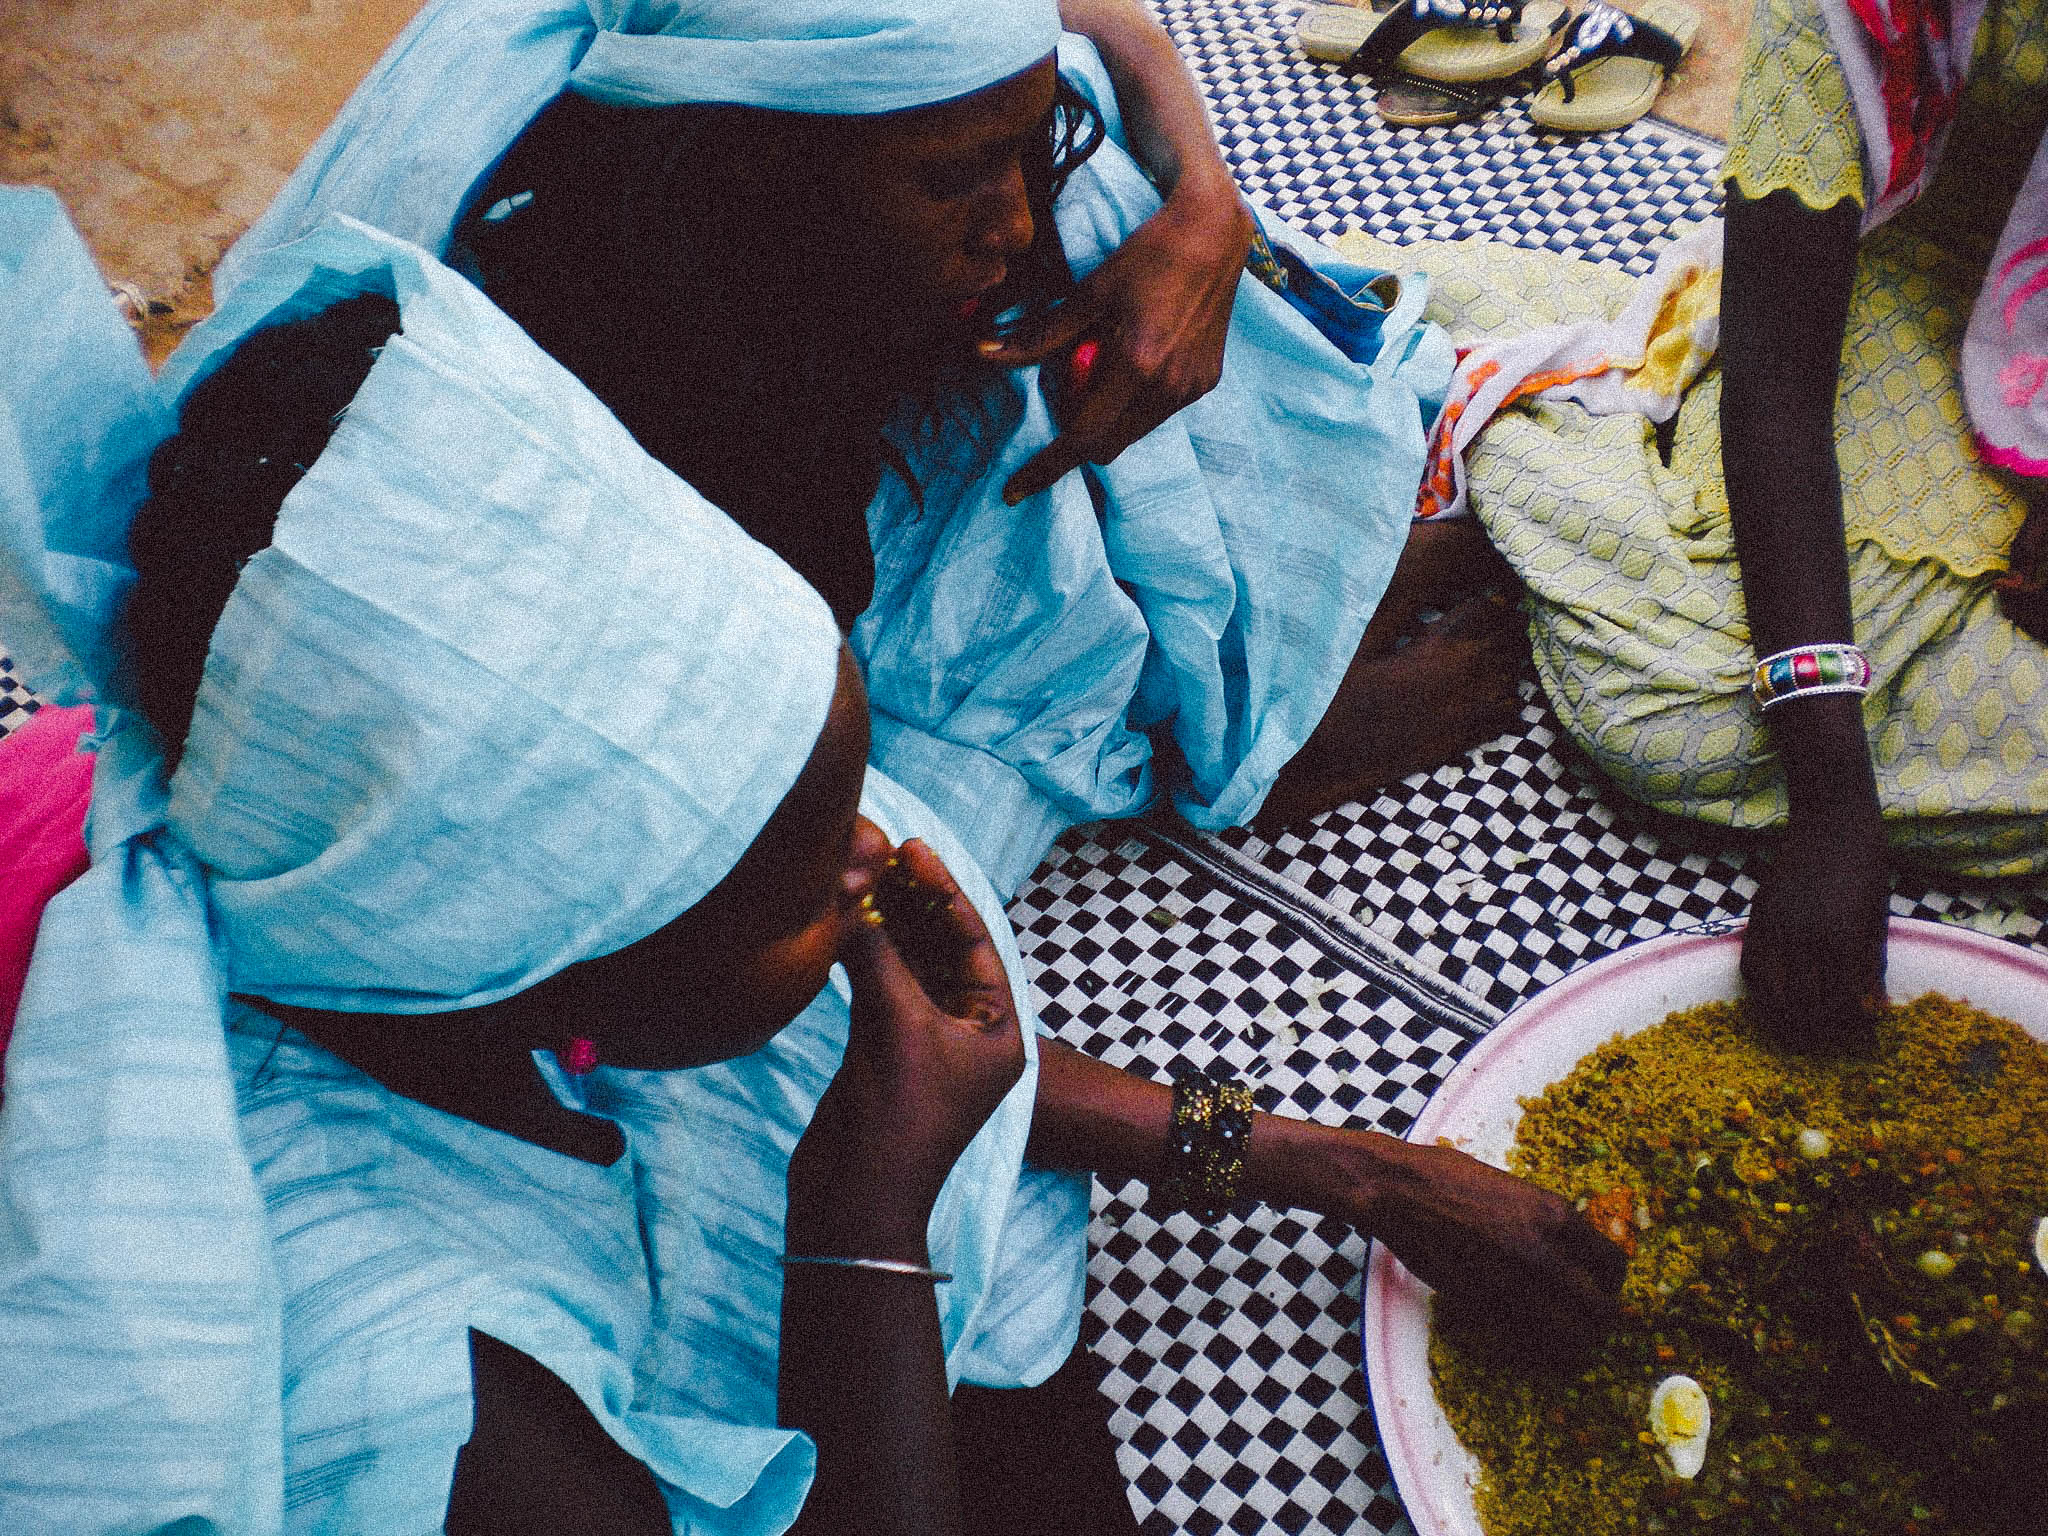  Gamou（ガンモ）と呼ばれるイスラム教のお祭りのときの食事の様子。ひとつの皿を何人かで共に食す。